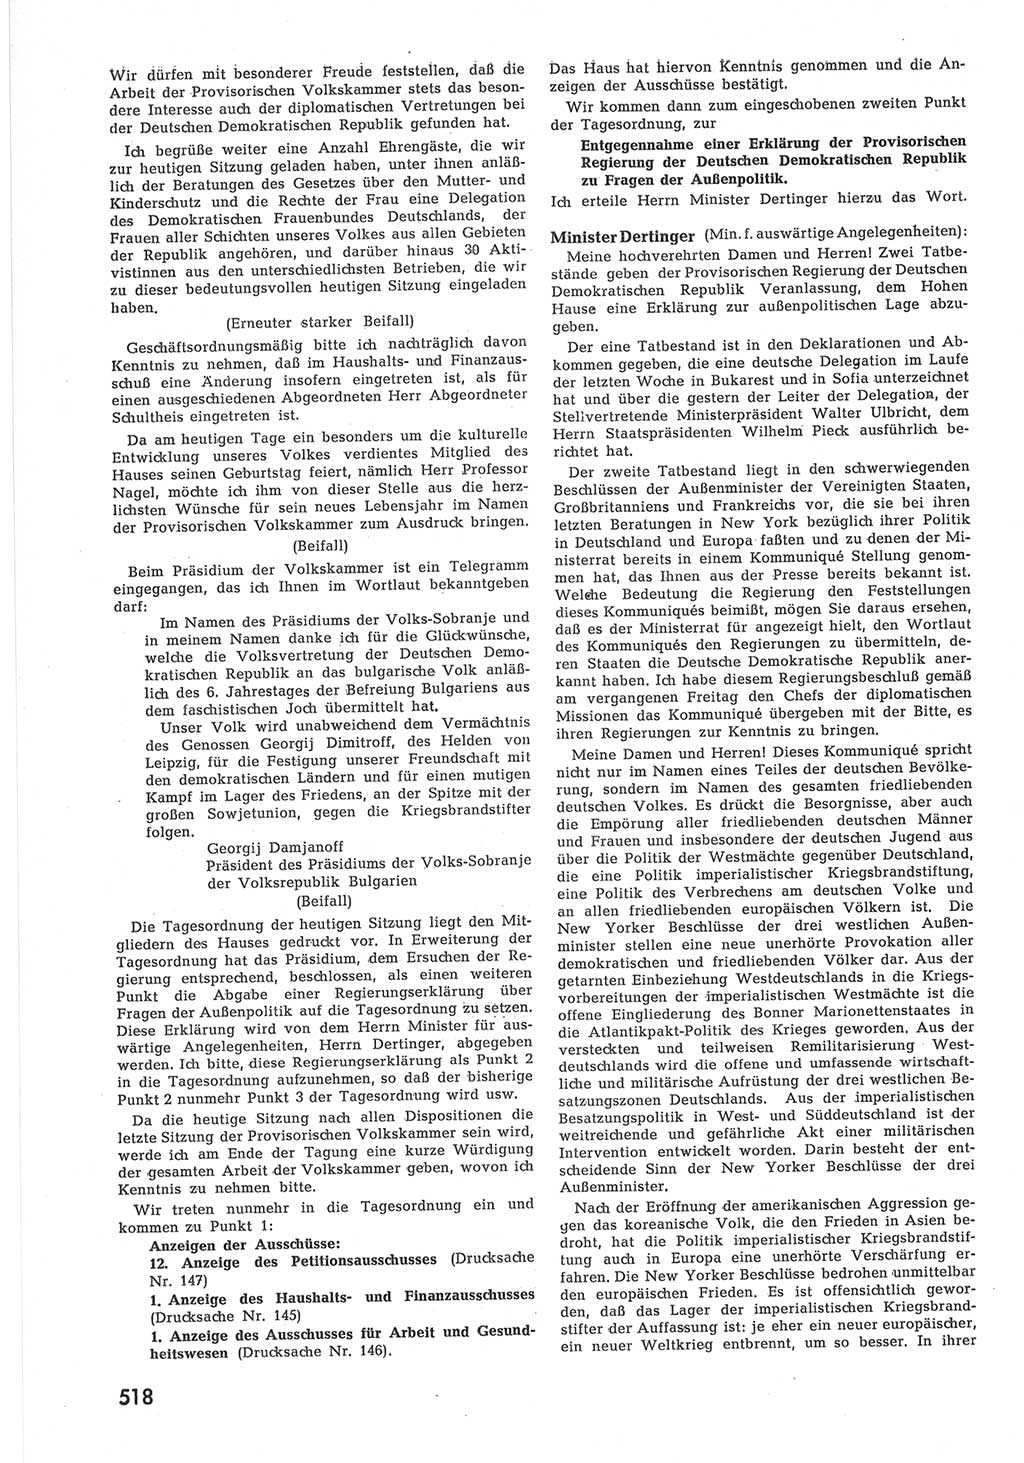 Provisorische Volkskammer (VK) der Deutschen Demokratischen Republik (DDR) 1949-1950, Dokument 536 (Prov. VK DDR 1949-1950, Dok. 536)